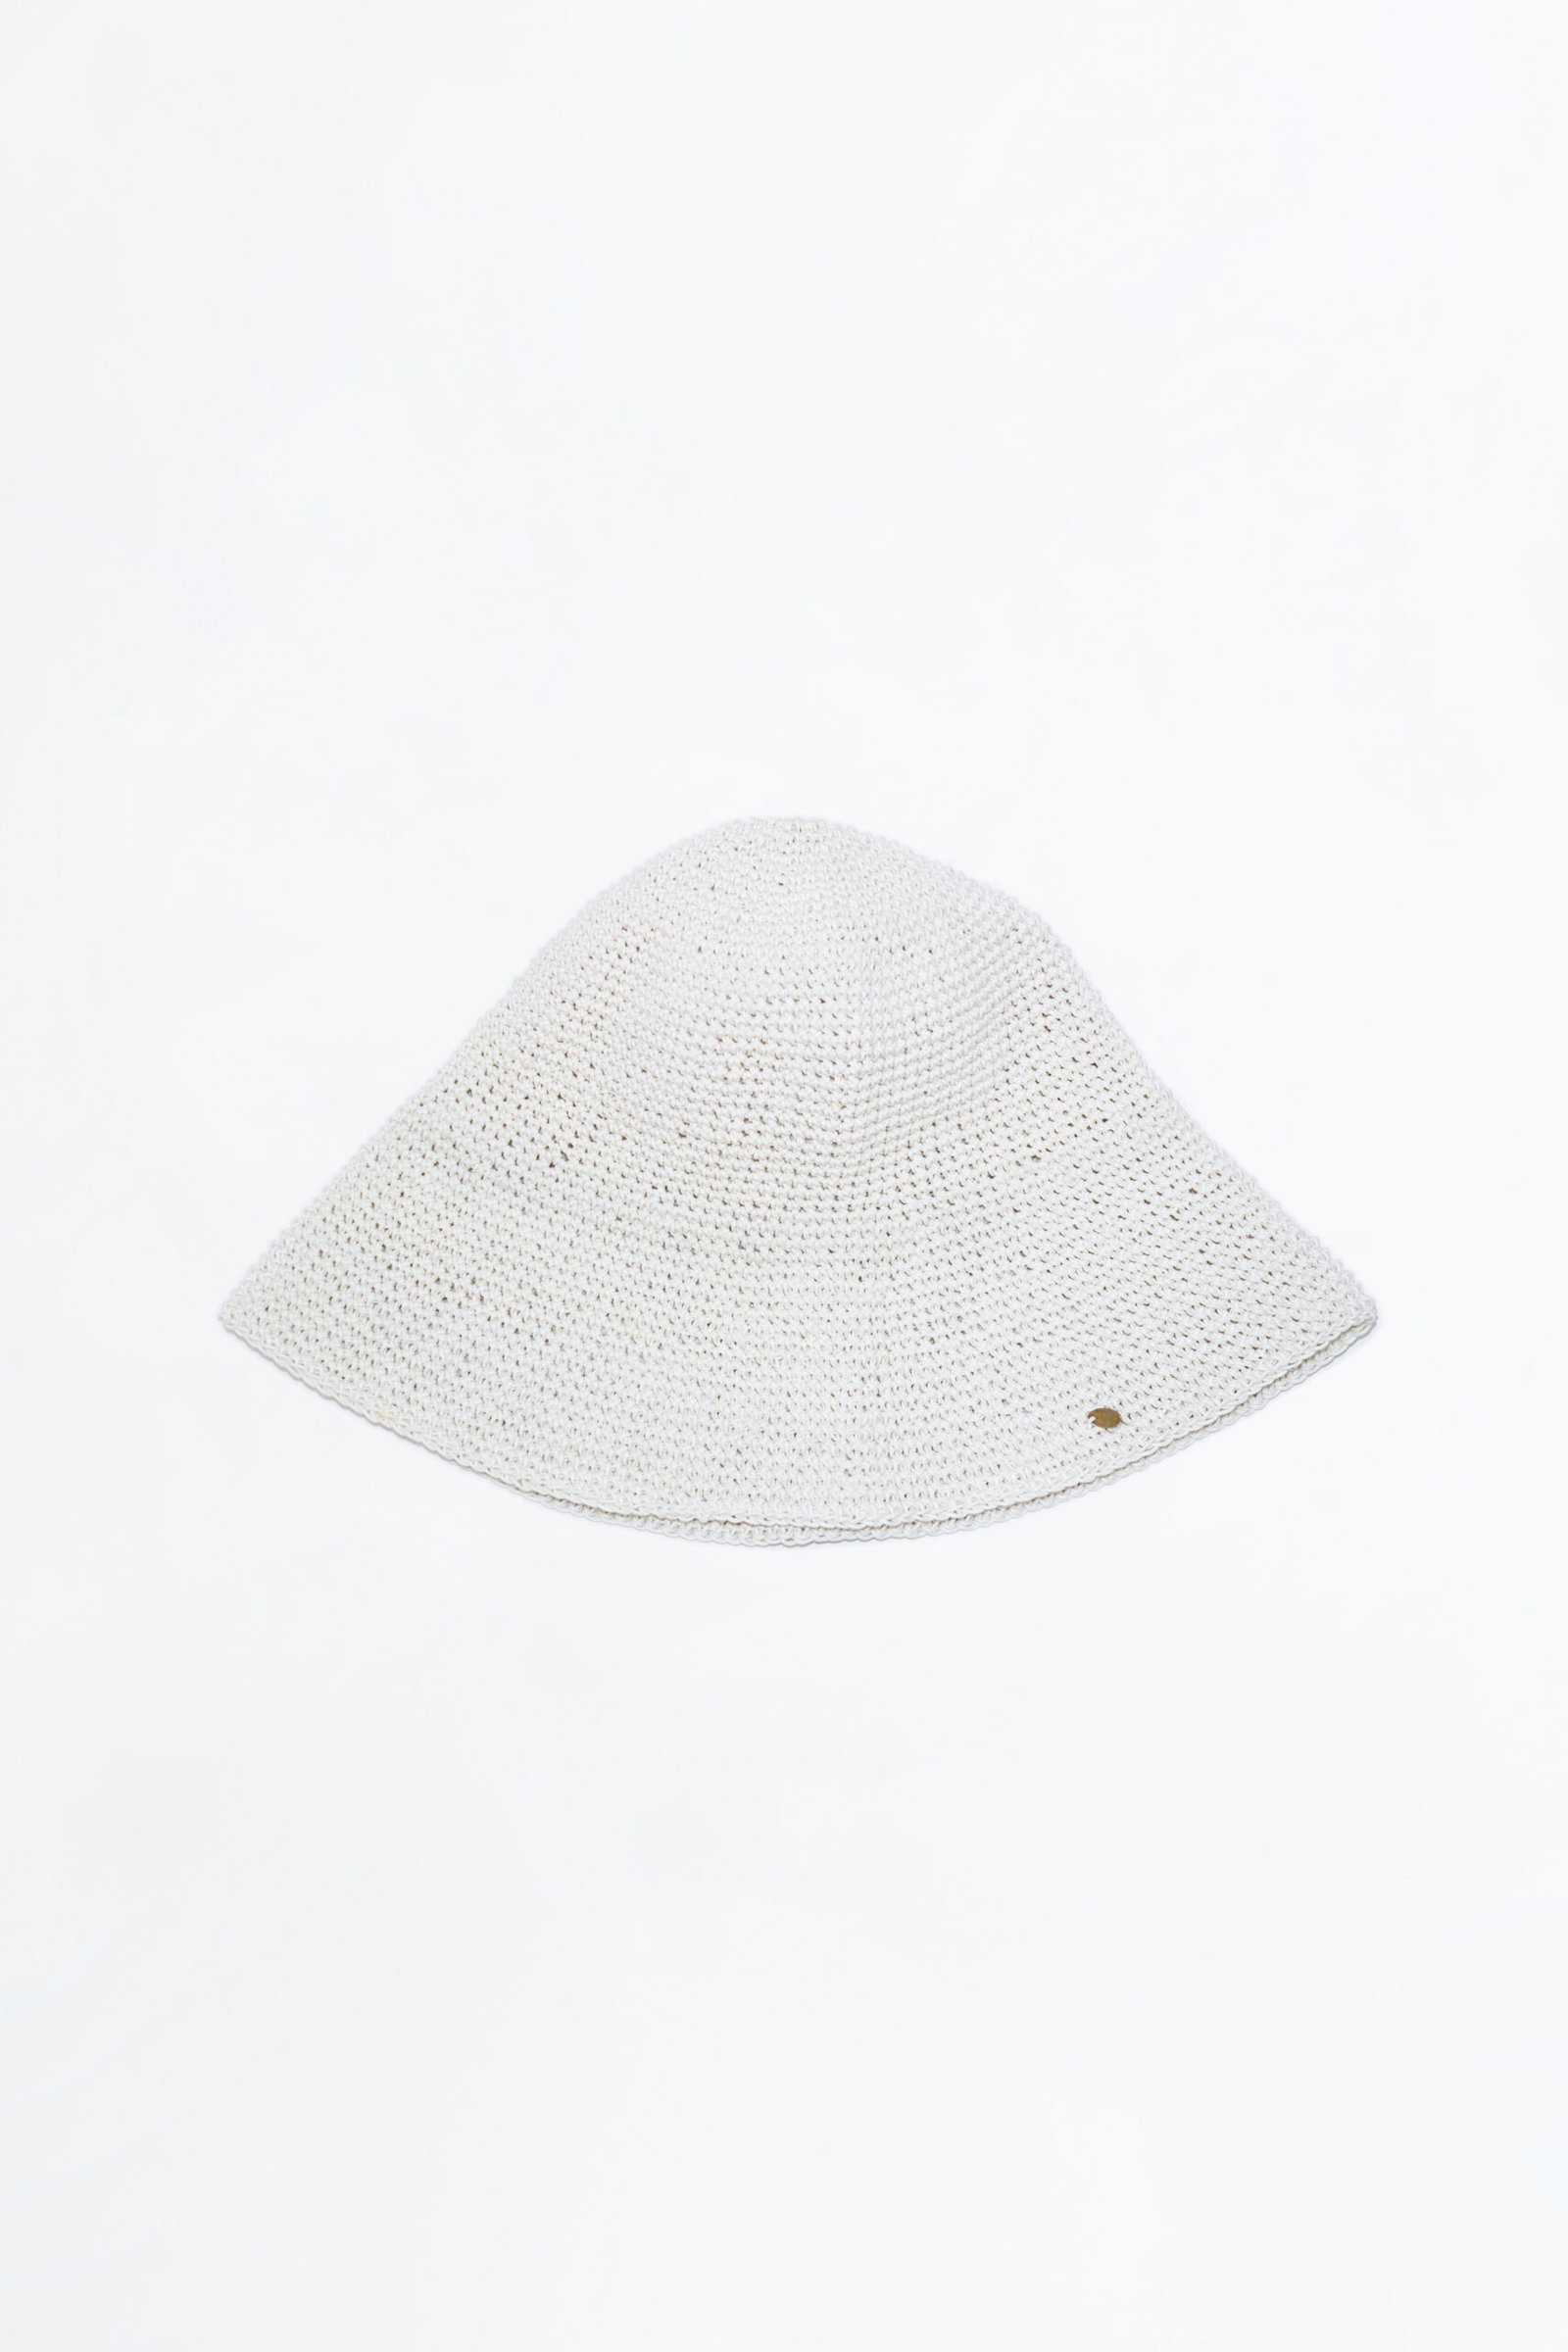 aynie-sombrero-pegual-blanco